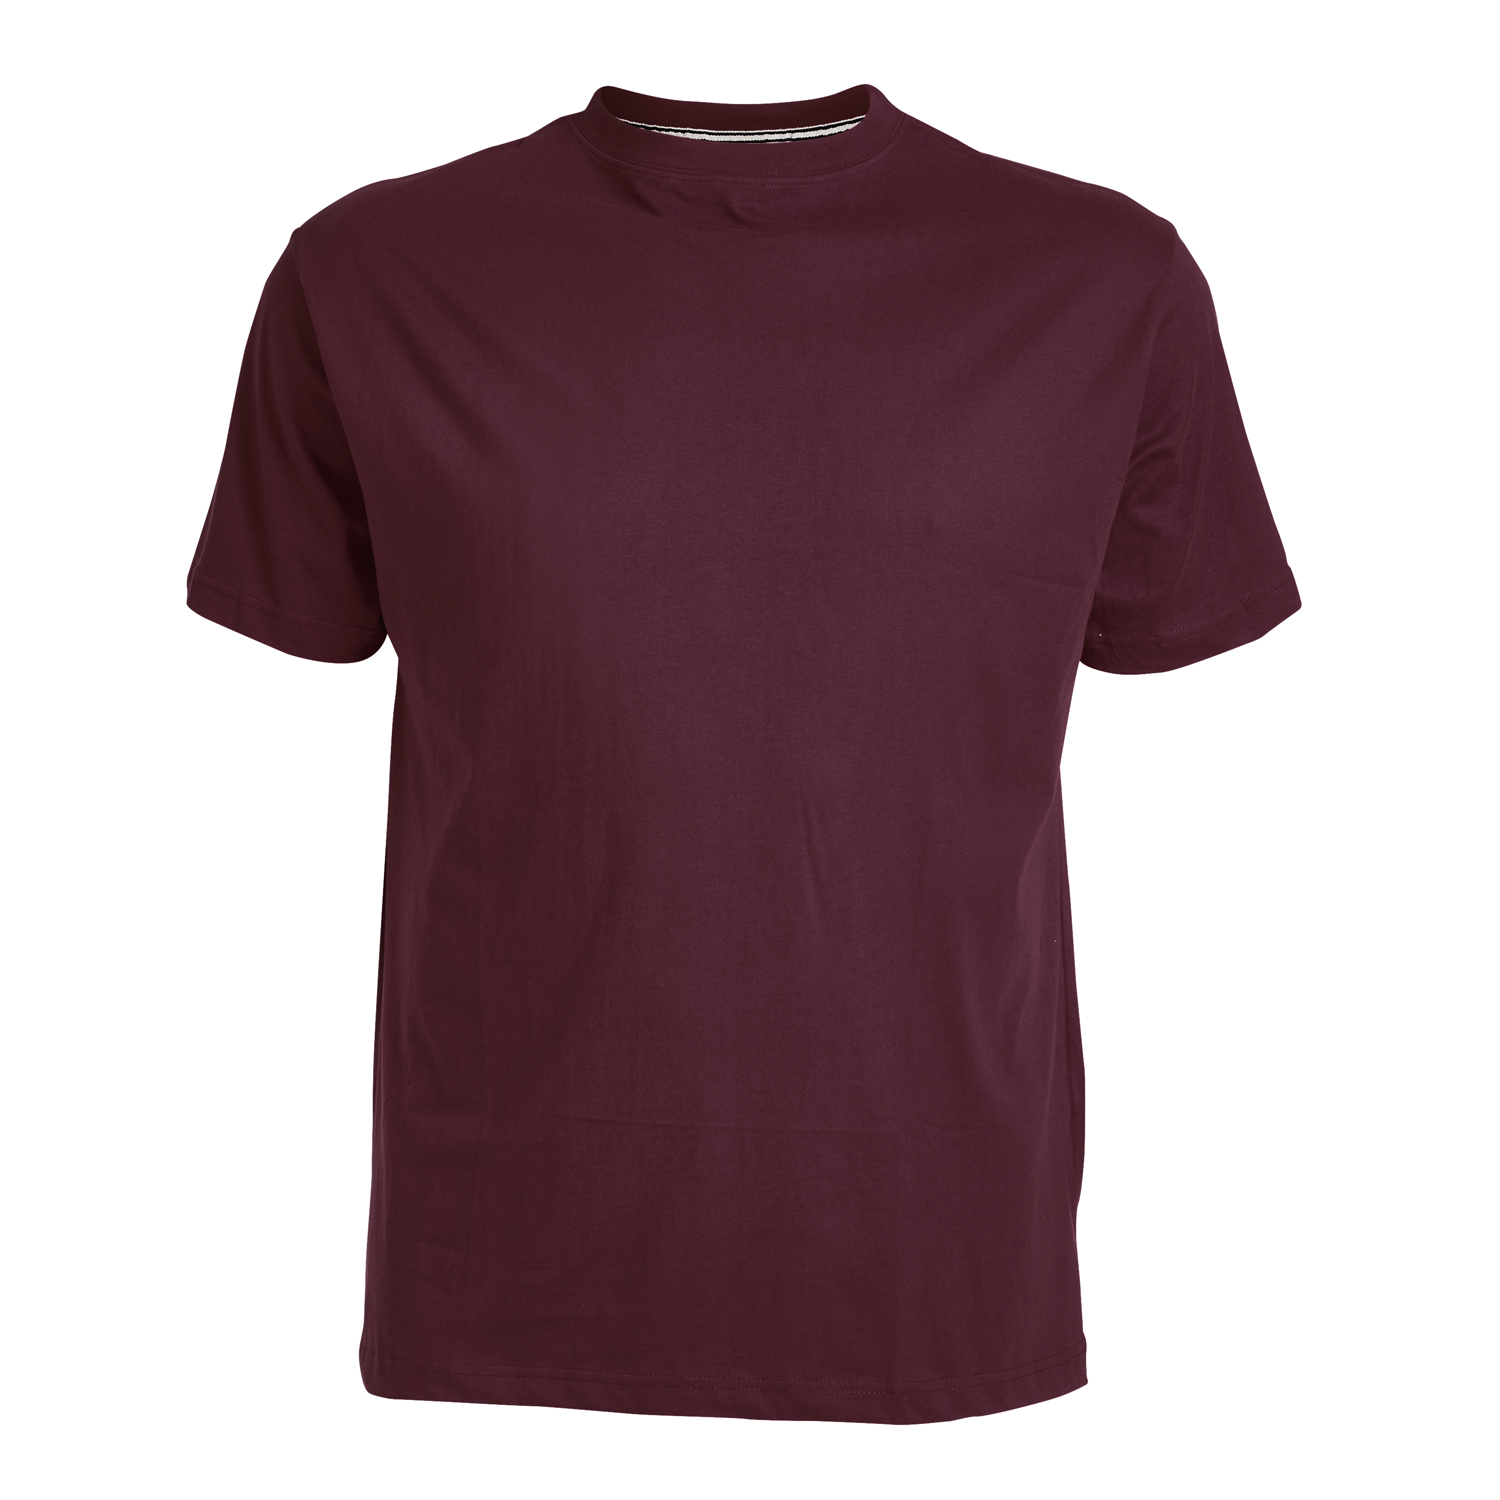 T-shirt bordeaux col rond de North56°4 grandes tailles jusqu'au 8XL